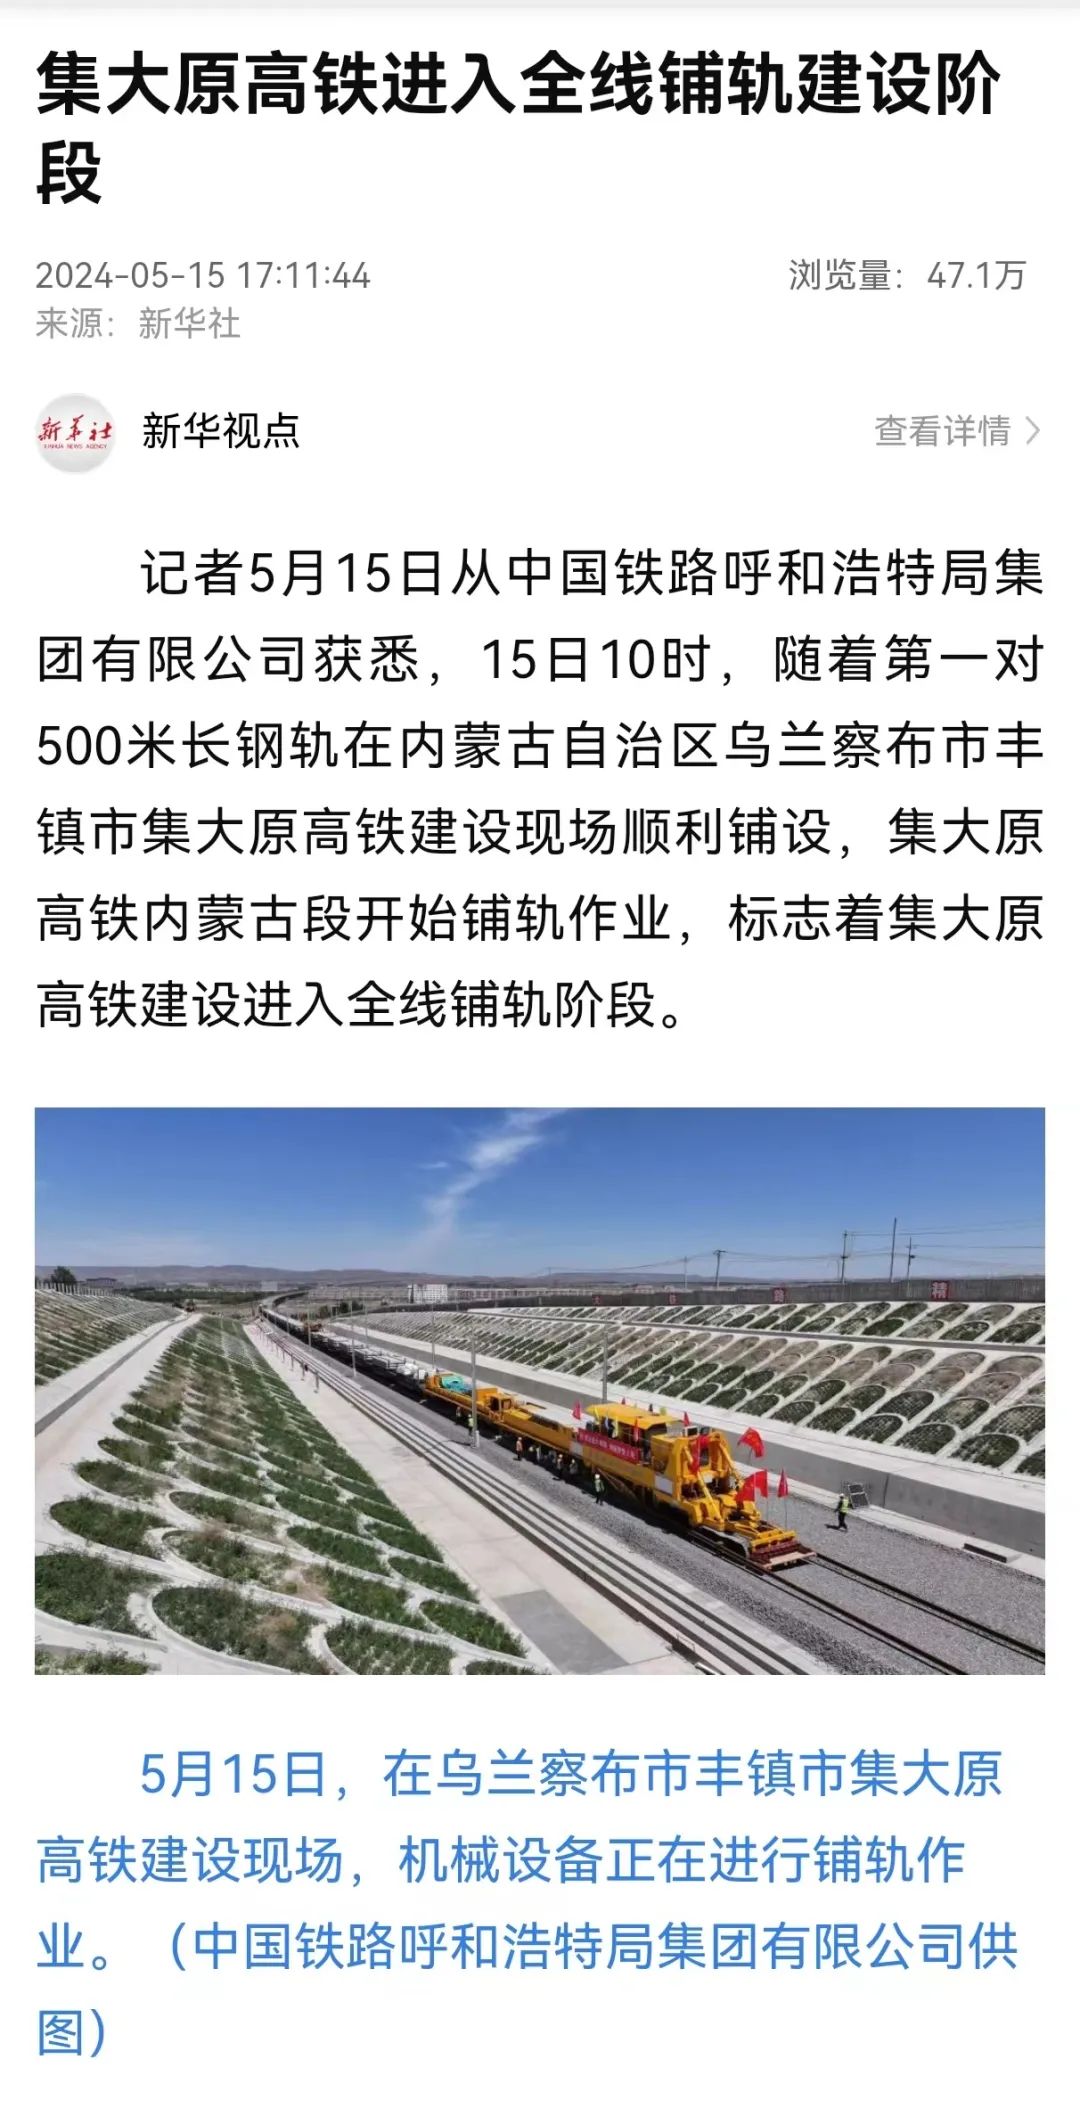 报道了5月15日上午10时,在内蒙古乌兰察布市丰镇市集大原高铁(集木